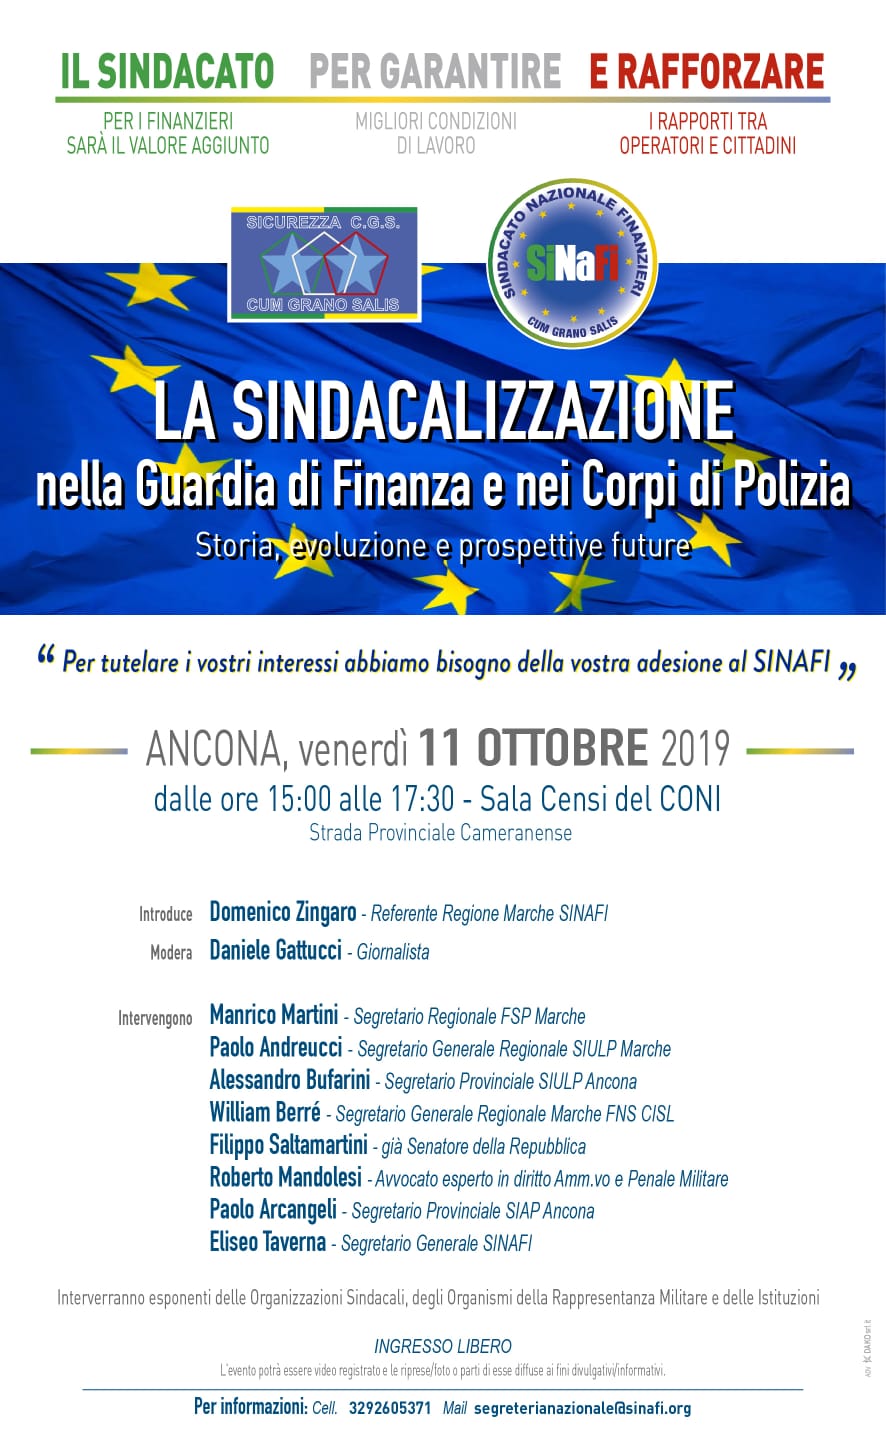 Convegno Ancona 11 ottobre 2019. La sindacalizzazione nella Guardia di Finanza e nei Corpi di Polizia.